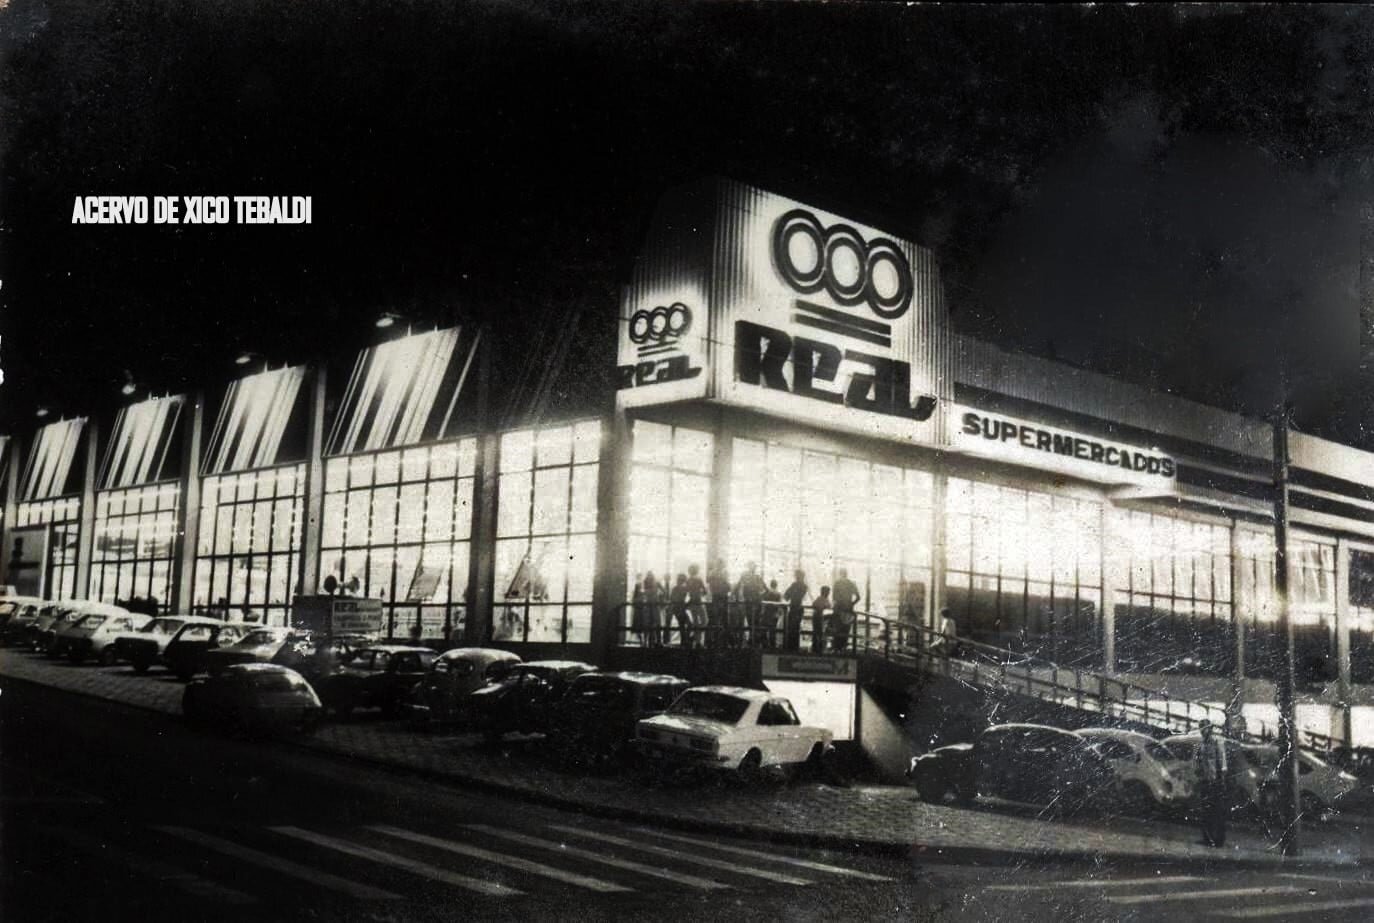 Supermercados Real - Década de 1970